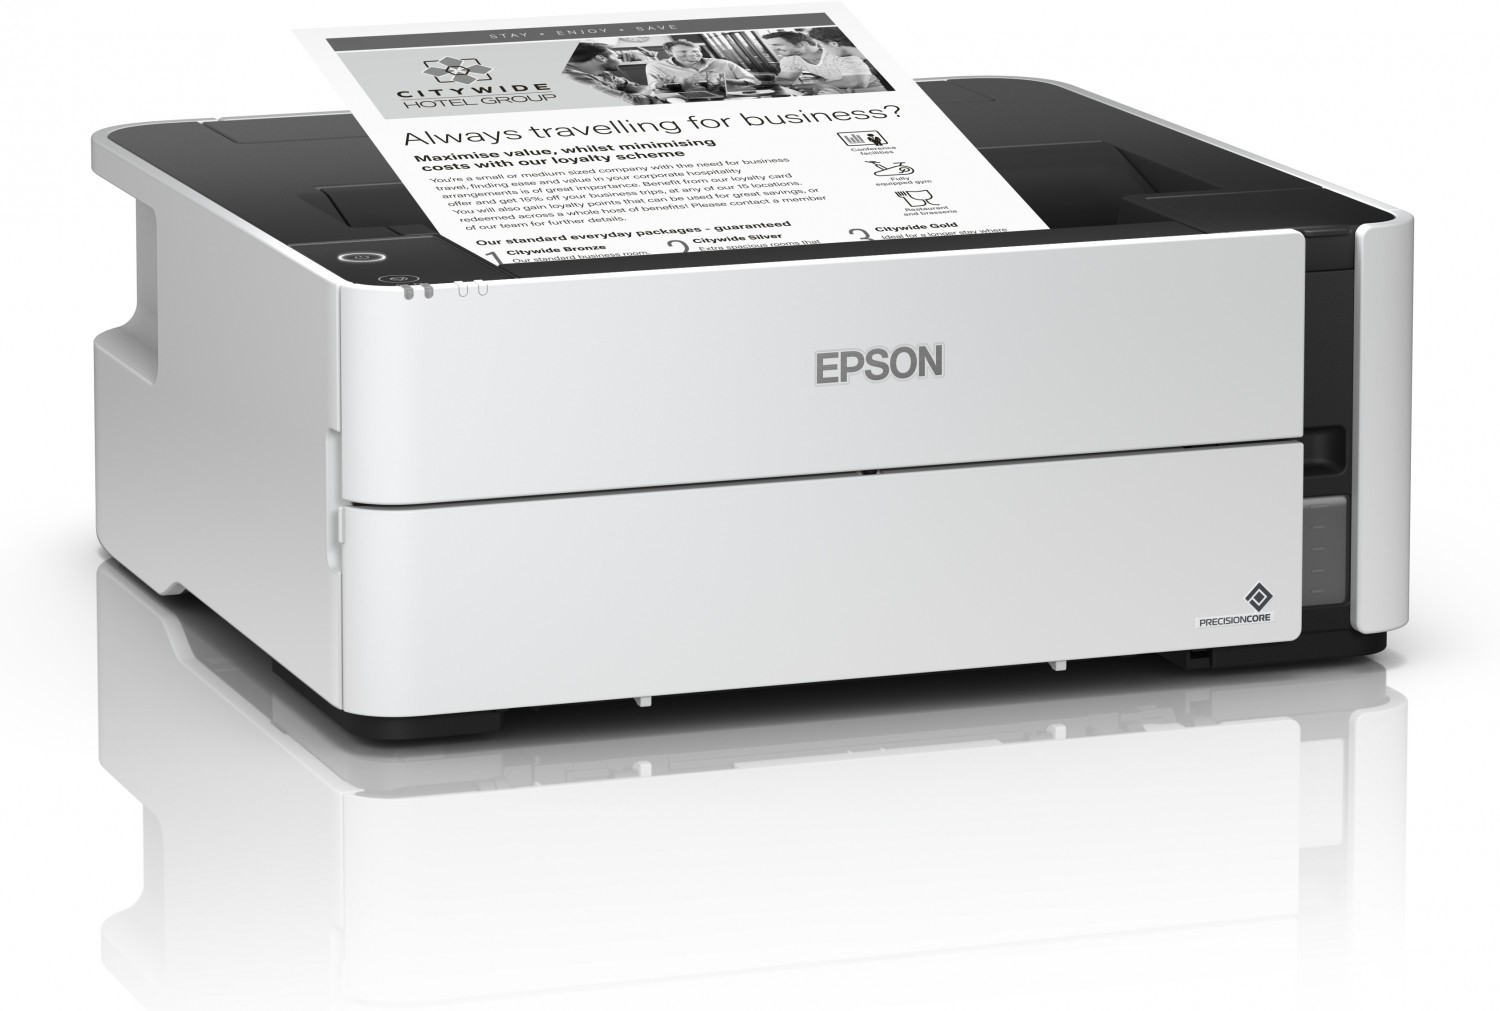 EPSON ra mắt máy in đơn sắc siêu tiết kiệm tại Việt Nam